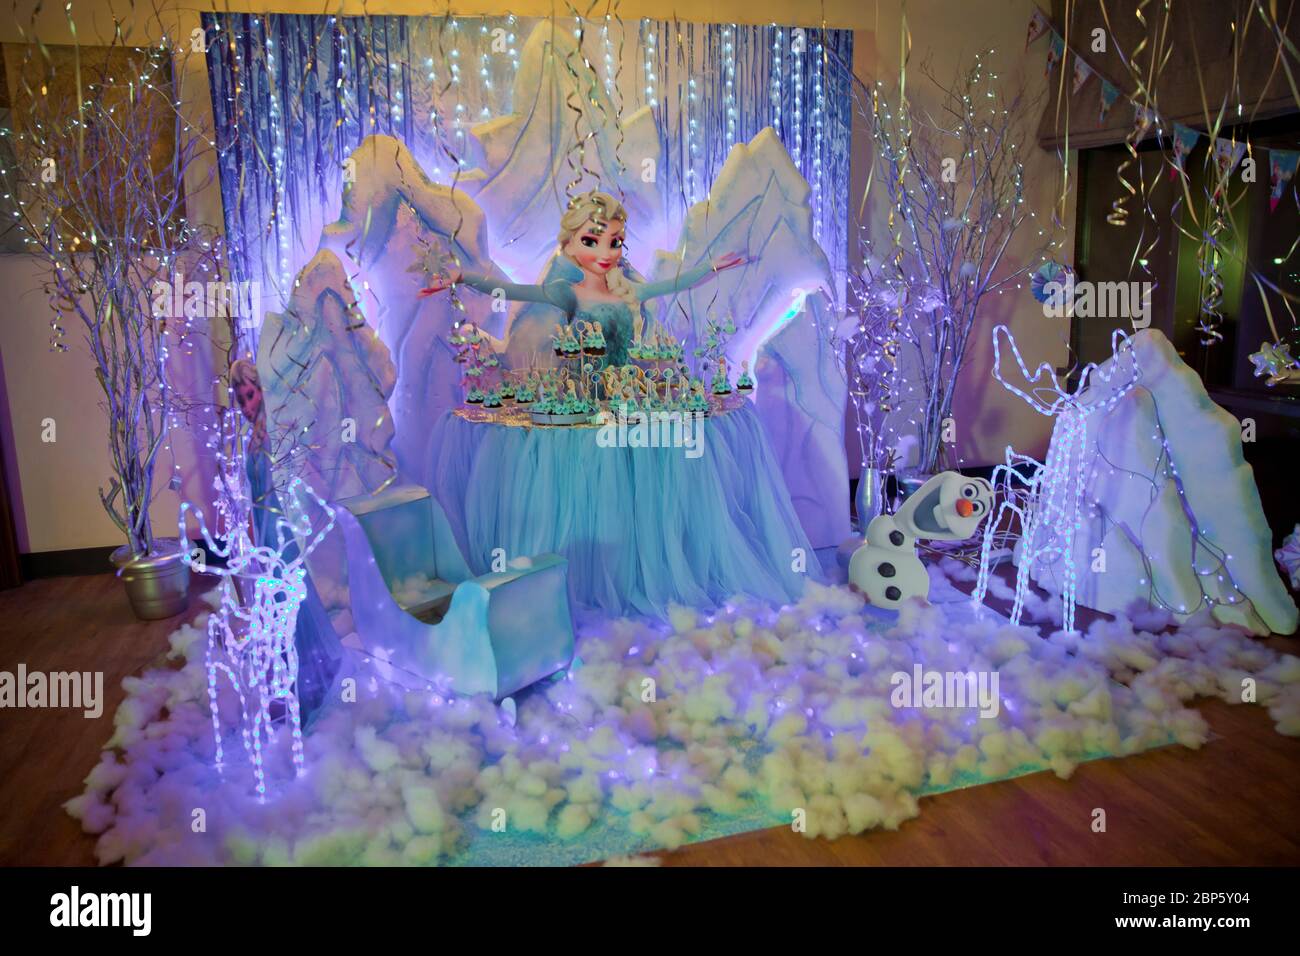 Frozen's Magic in a Candy Bar. Geburtstagsideen für "Frozen Party" für  "Candy Bar". Baku, Aserbaidschan. 16.12.2018 Stockfotografie - Alamy